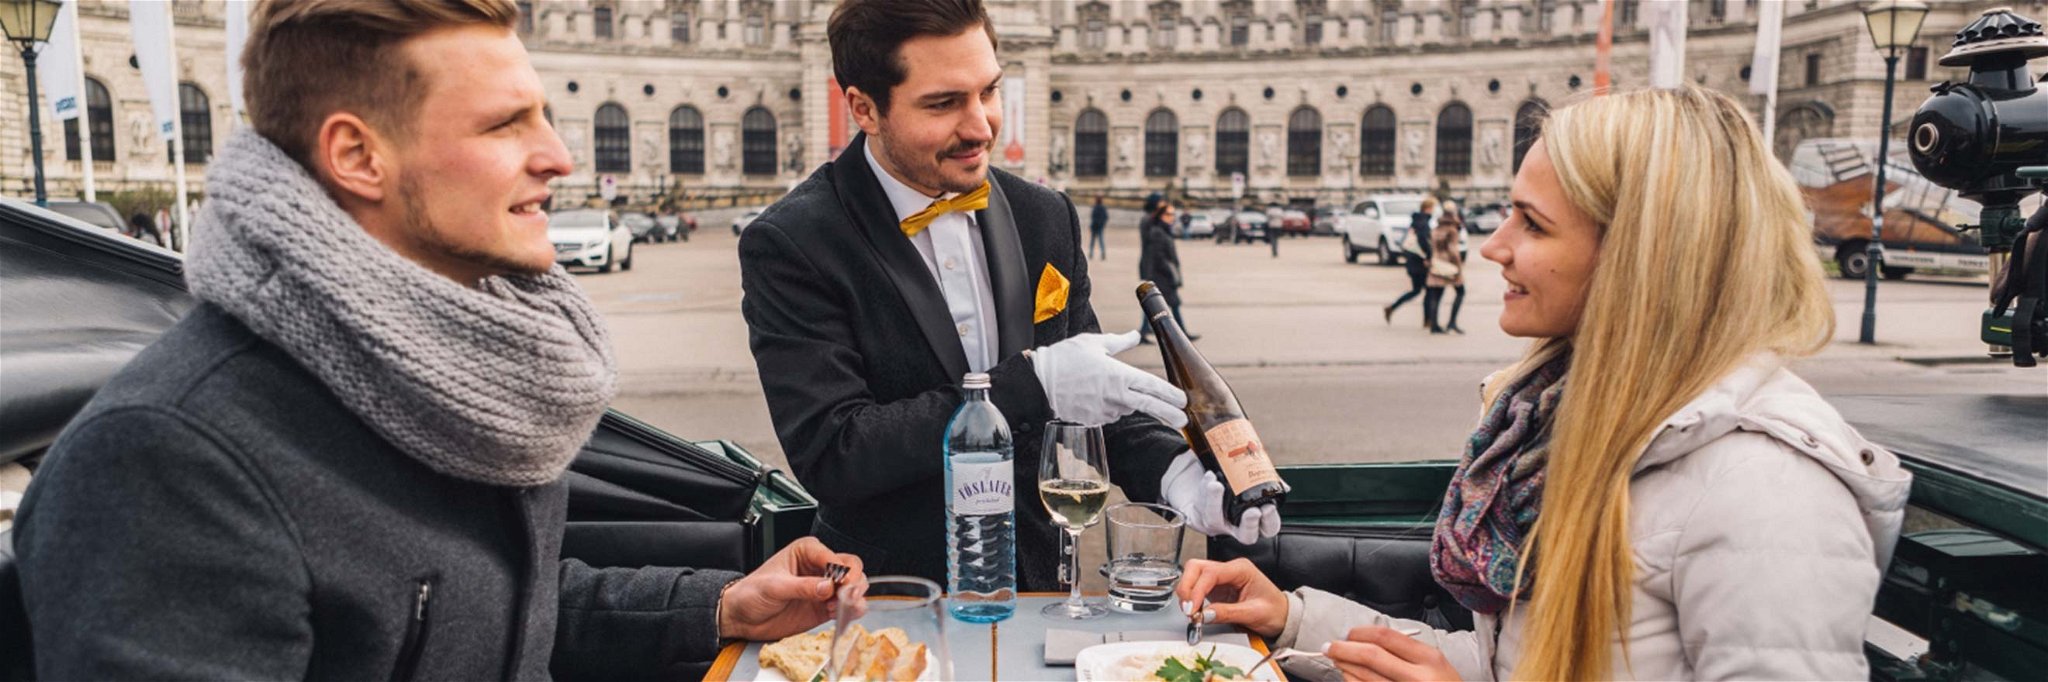 Mit dem Fiaker durch Wien und dabei kulinarisch verwöhnt werden, das wird bei Riding Dinner geboten. 